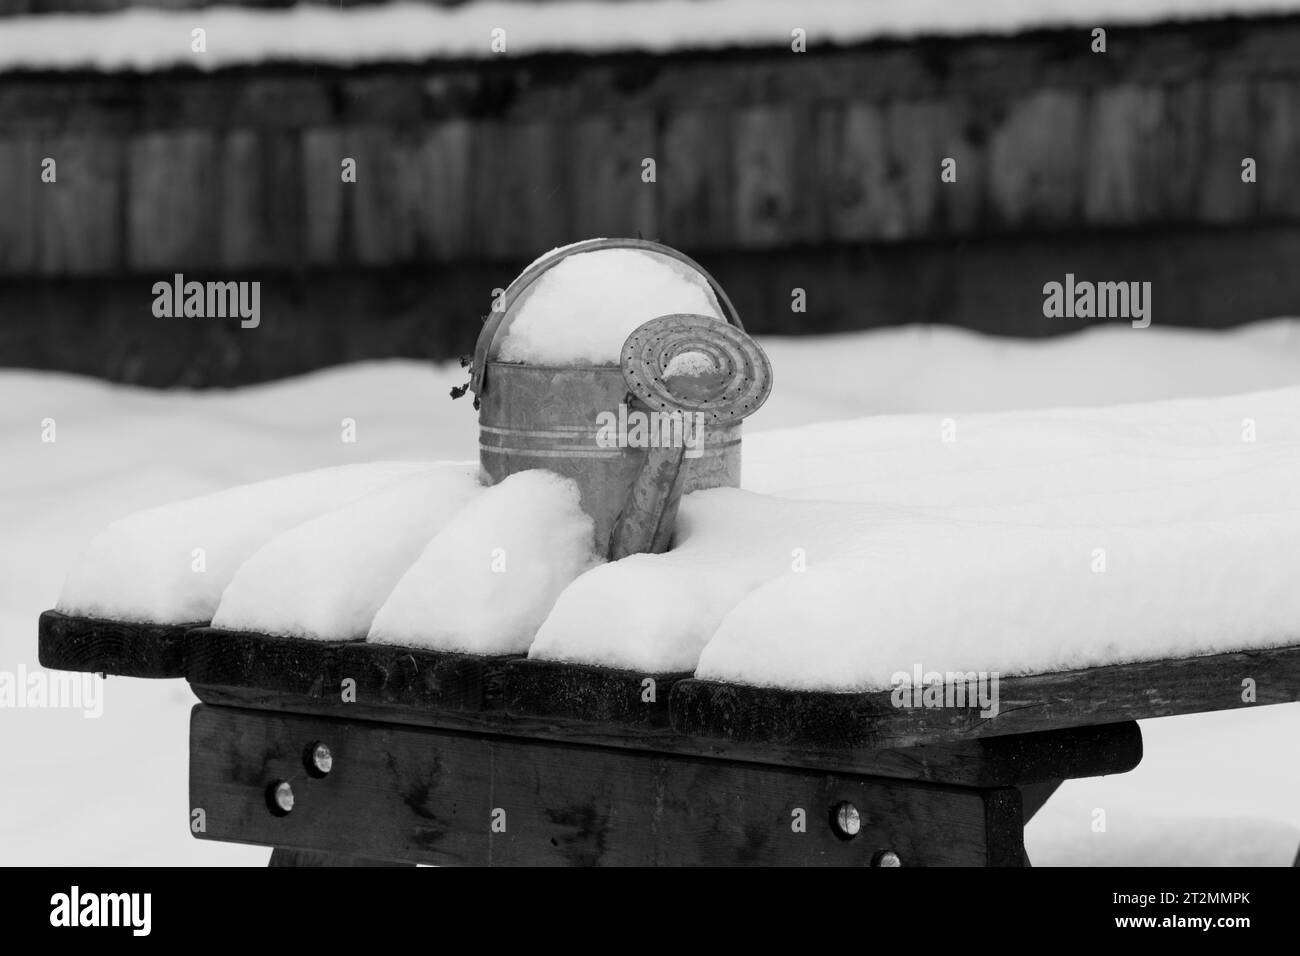 Emaille-Gießkanne auf schneebedeckter Bank. Überwinterung. Schwarzweißbild. Stockfoto